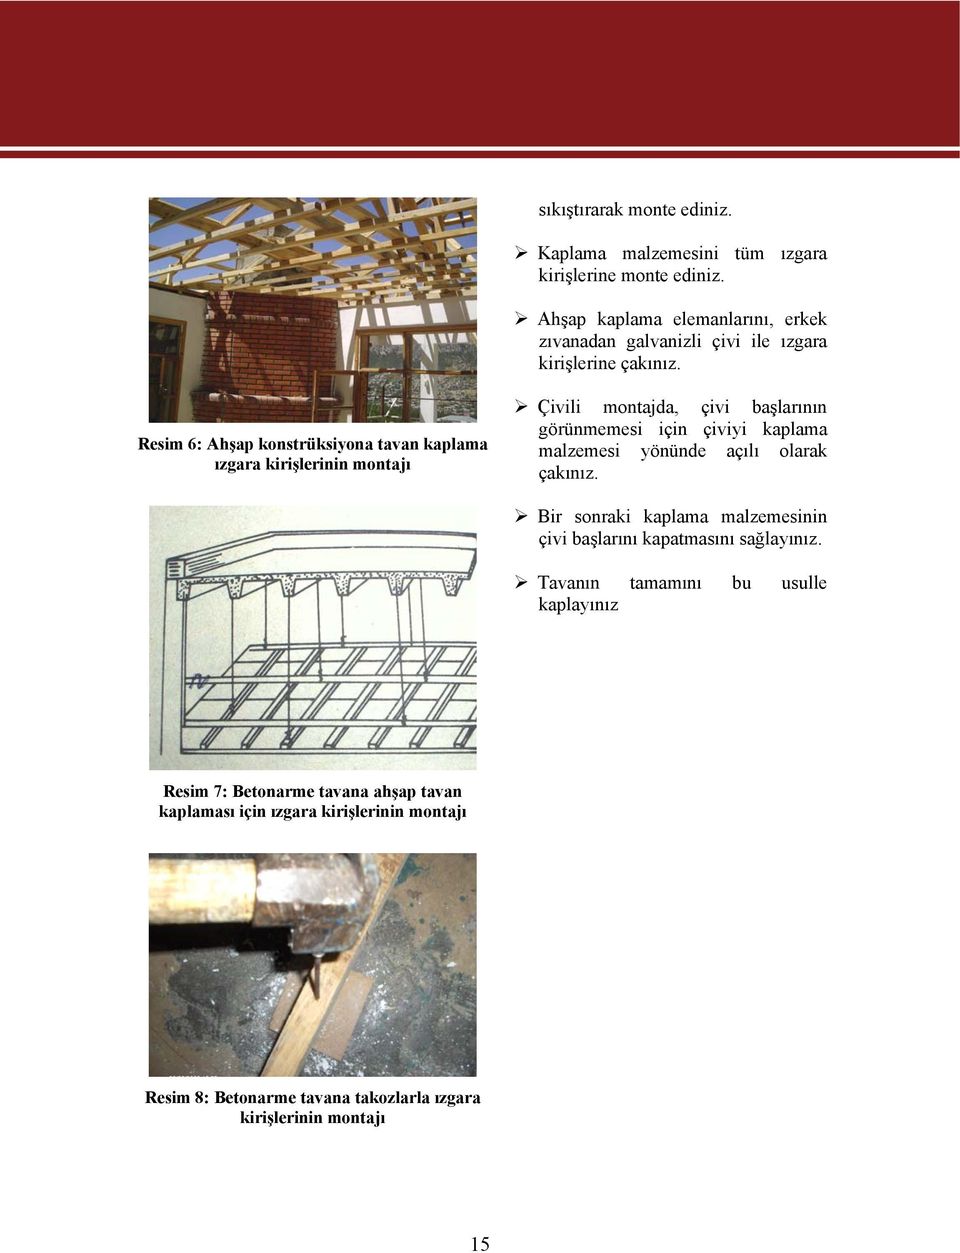 Resim 6: Ahşap konstrüksiyona tavan kaplama ızgara kirişlerinin montajı Çivili montajda, çivi başlarının görünmemesi için çiviyi kaplama malzemesi